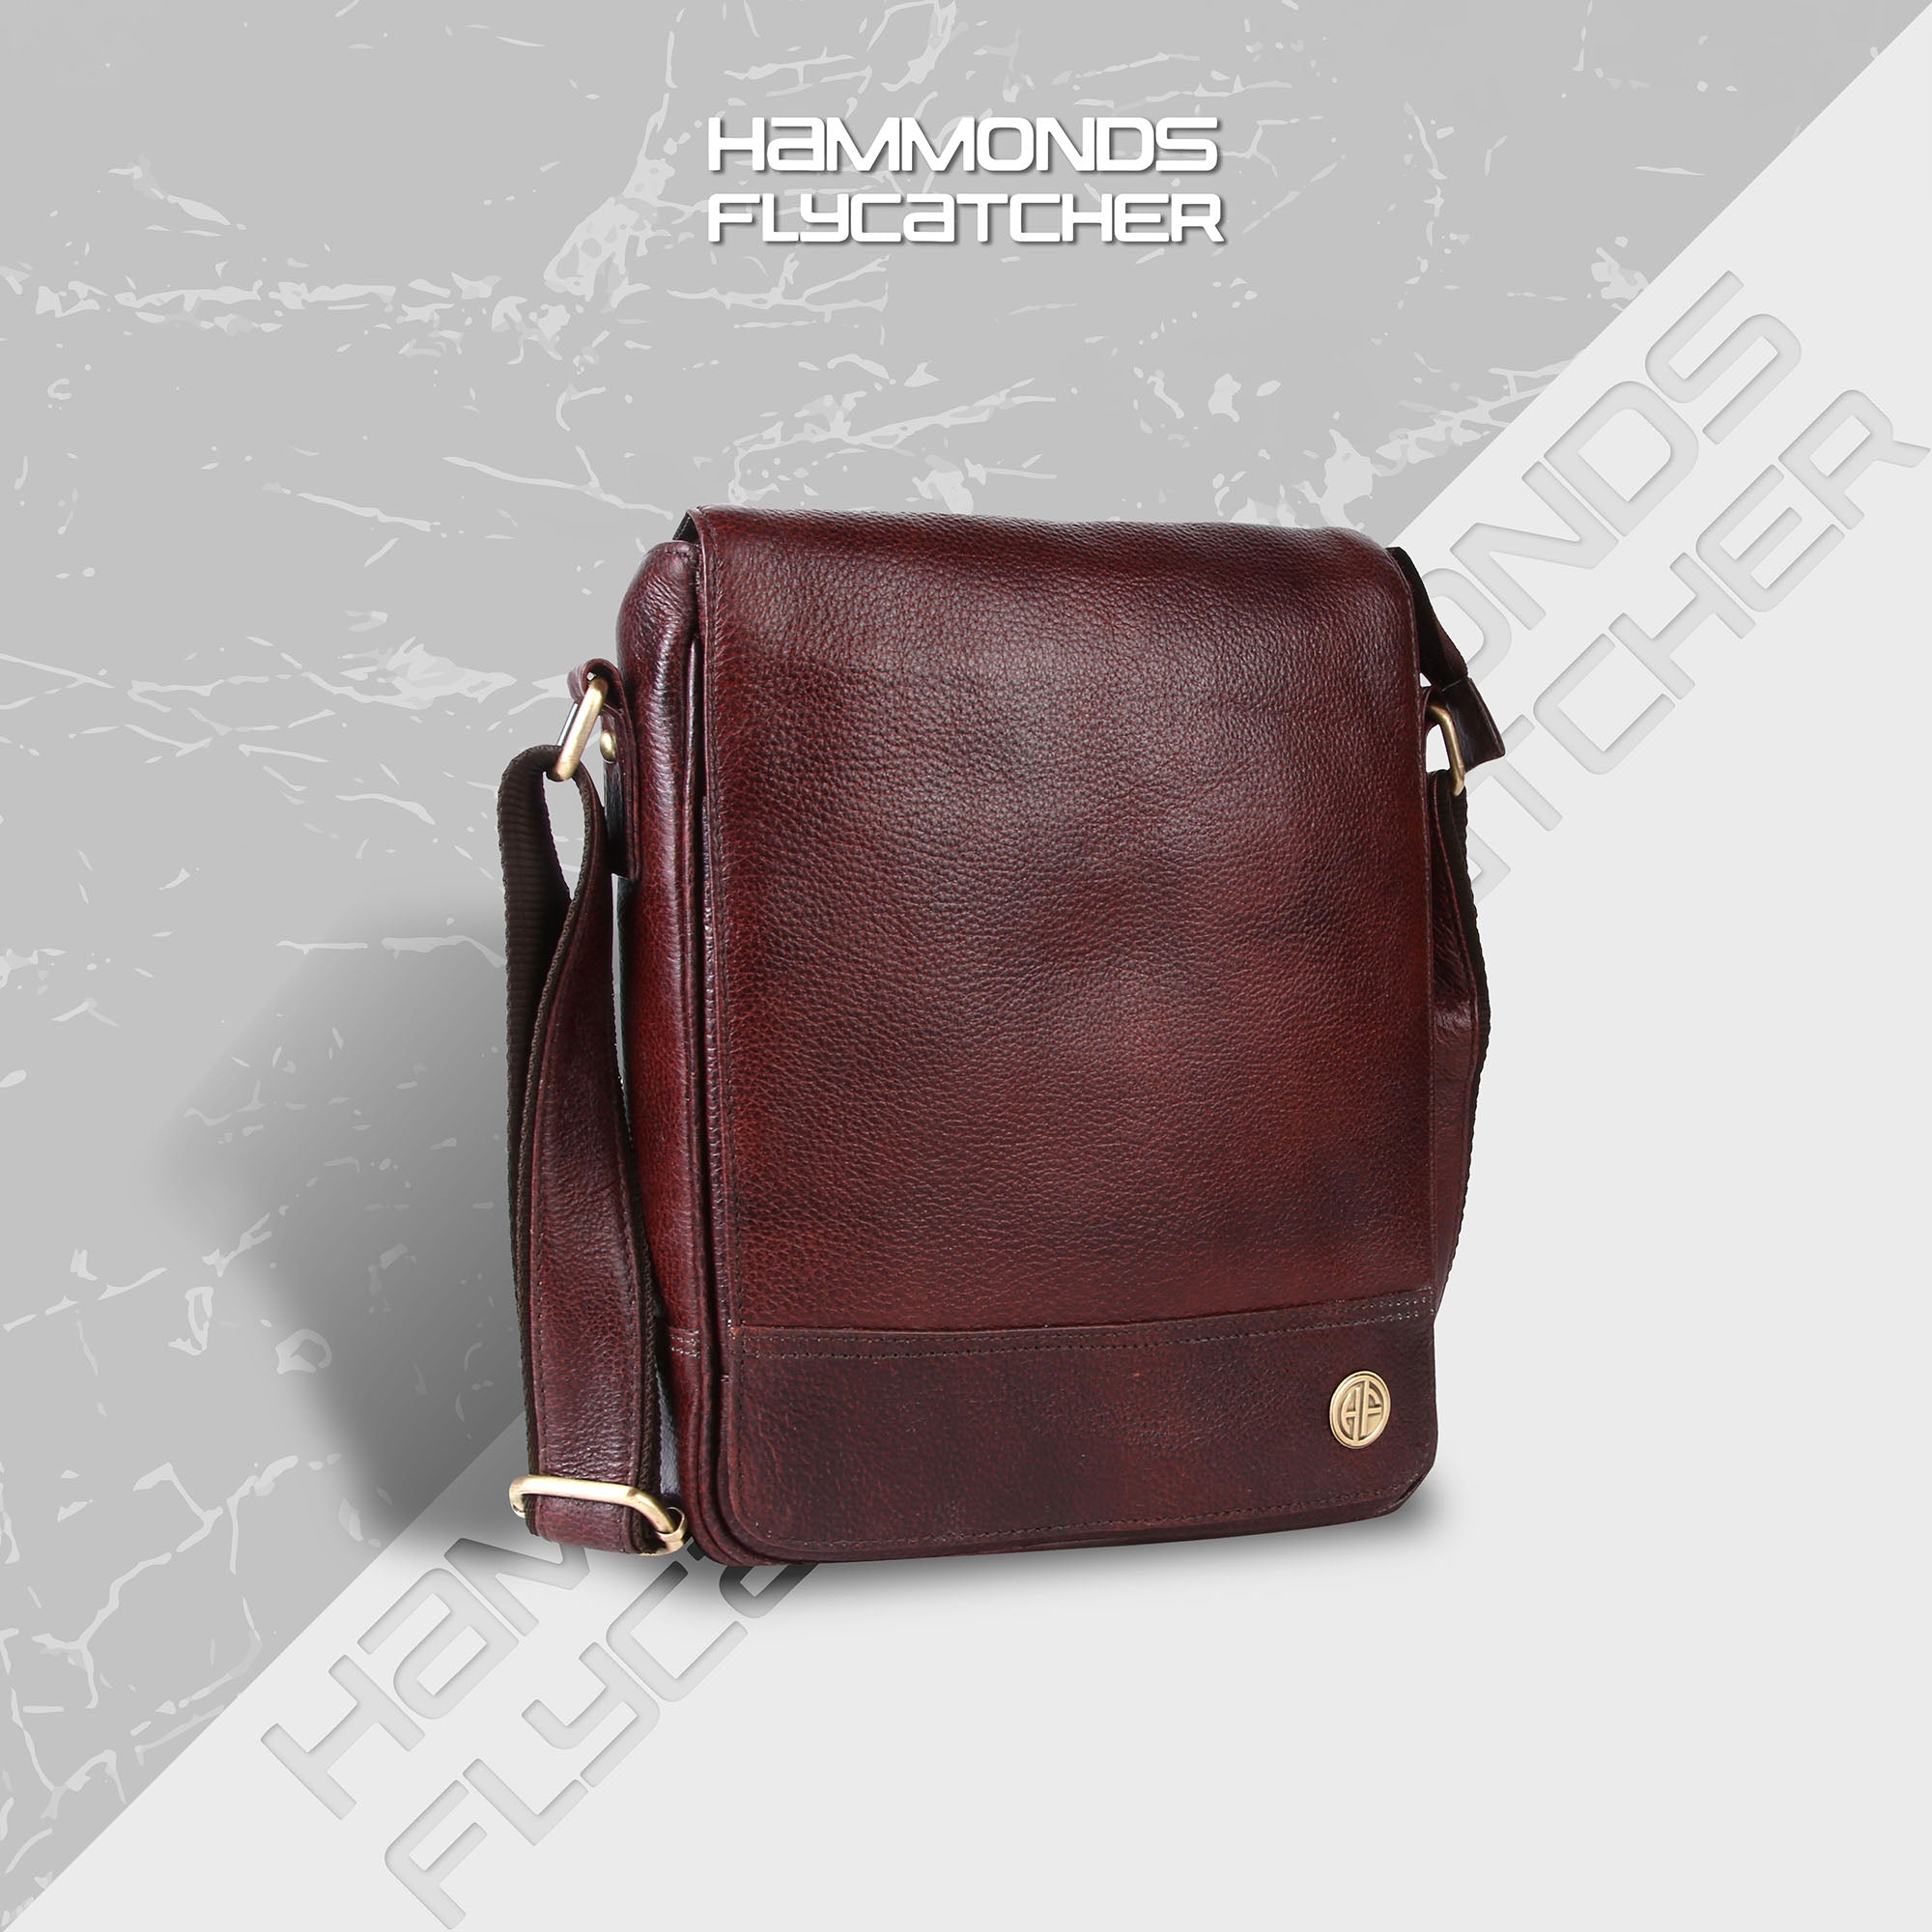 Premium Leather Sling Bag For Men - Adjustable Shoulder Strap - Ideal For Travel, College, and Office